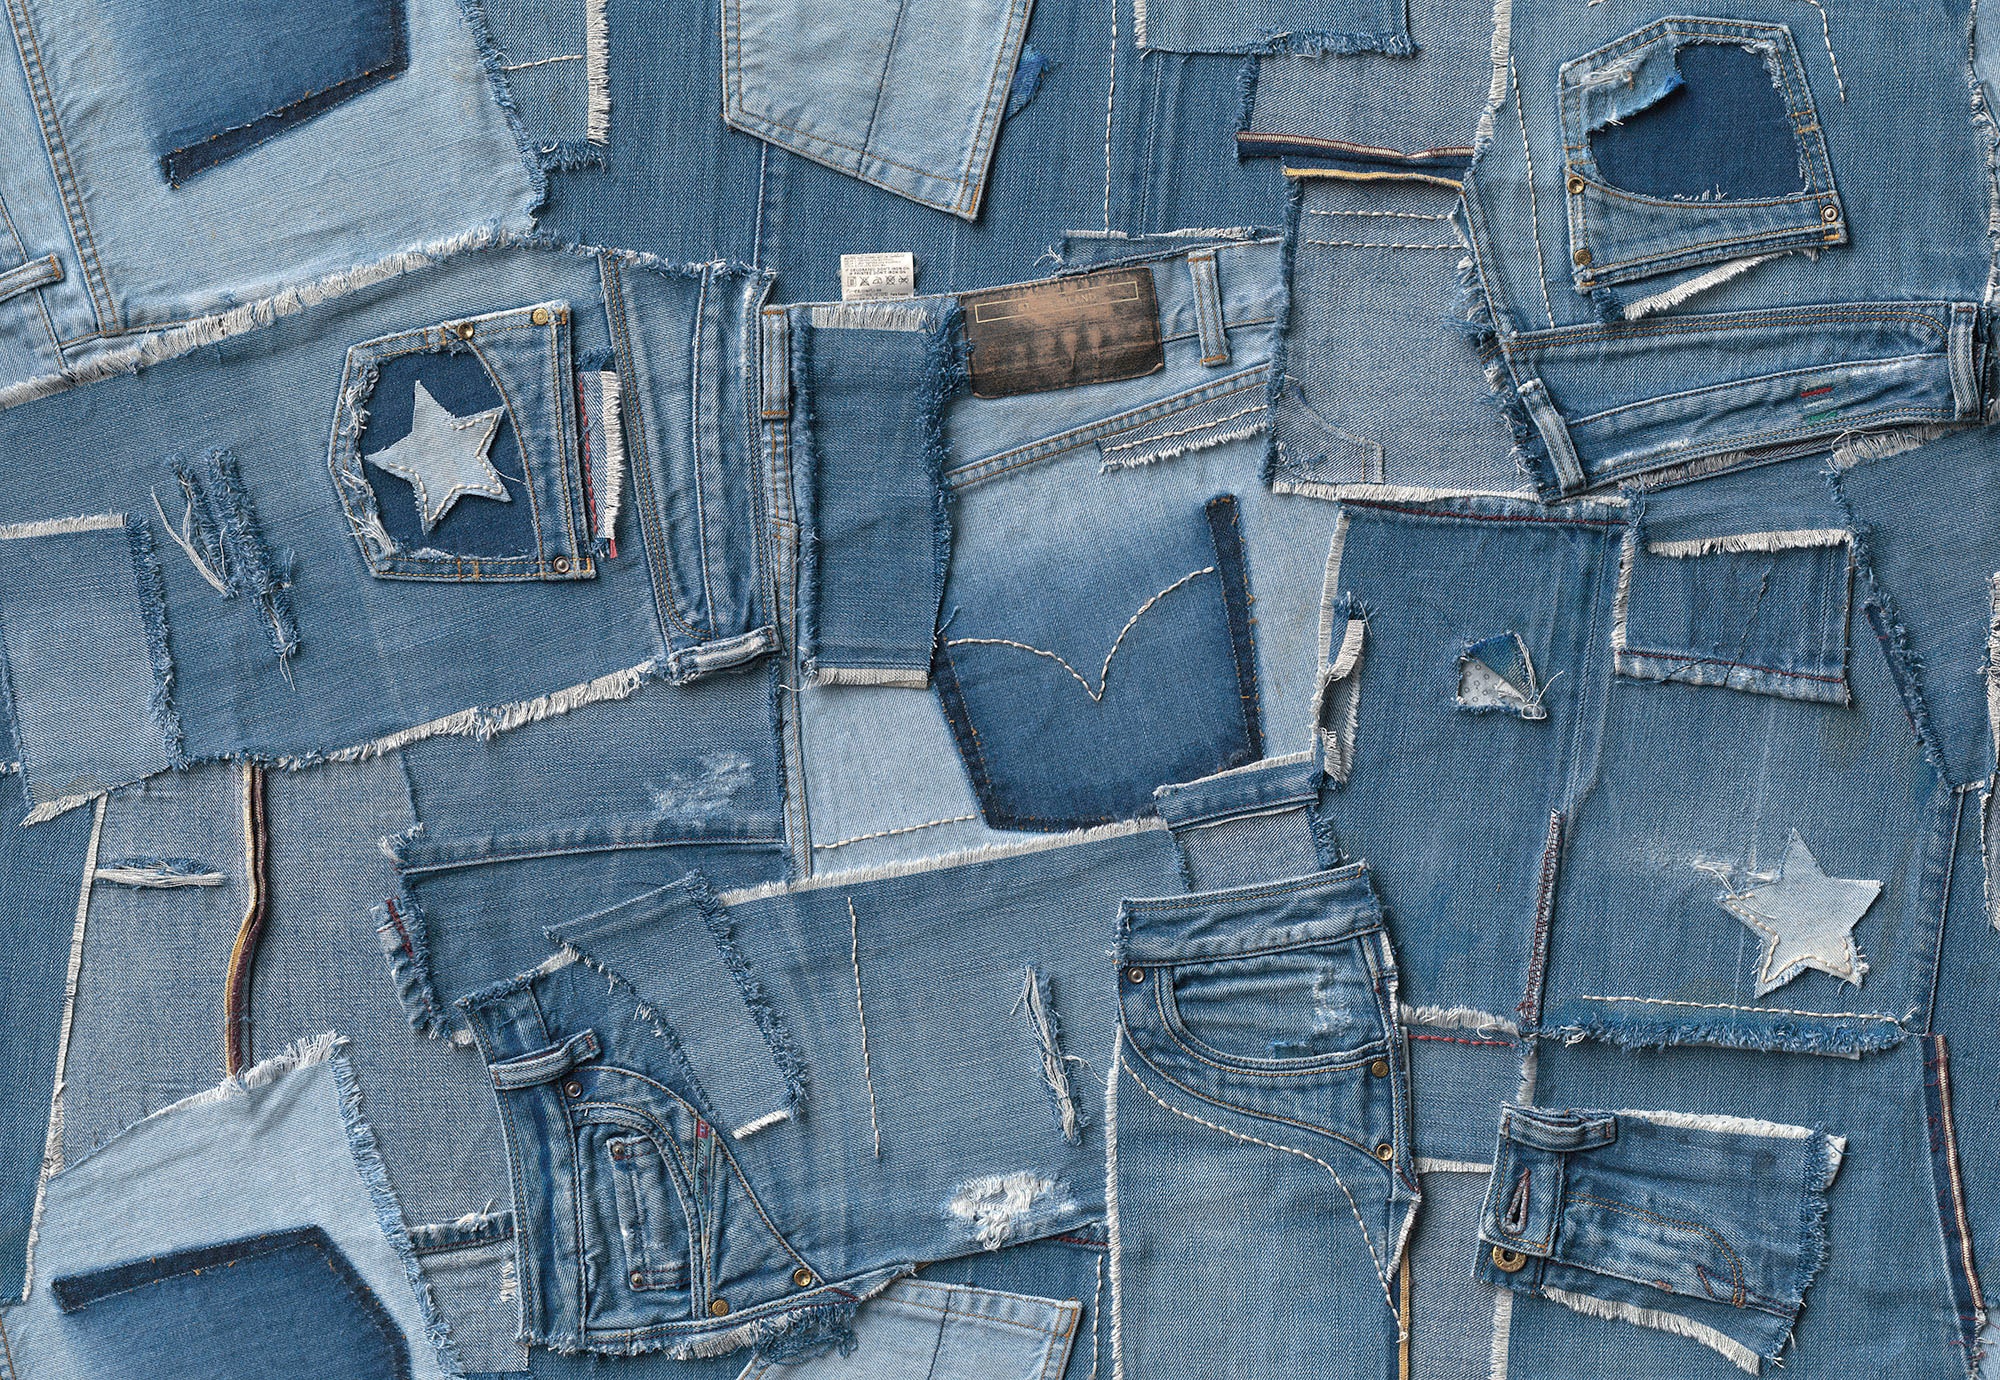 Komar Fototapete »Papier Fototapete - Jeans - Größe 368 x 254 cm«, bedruckt